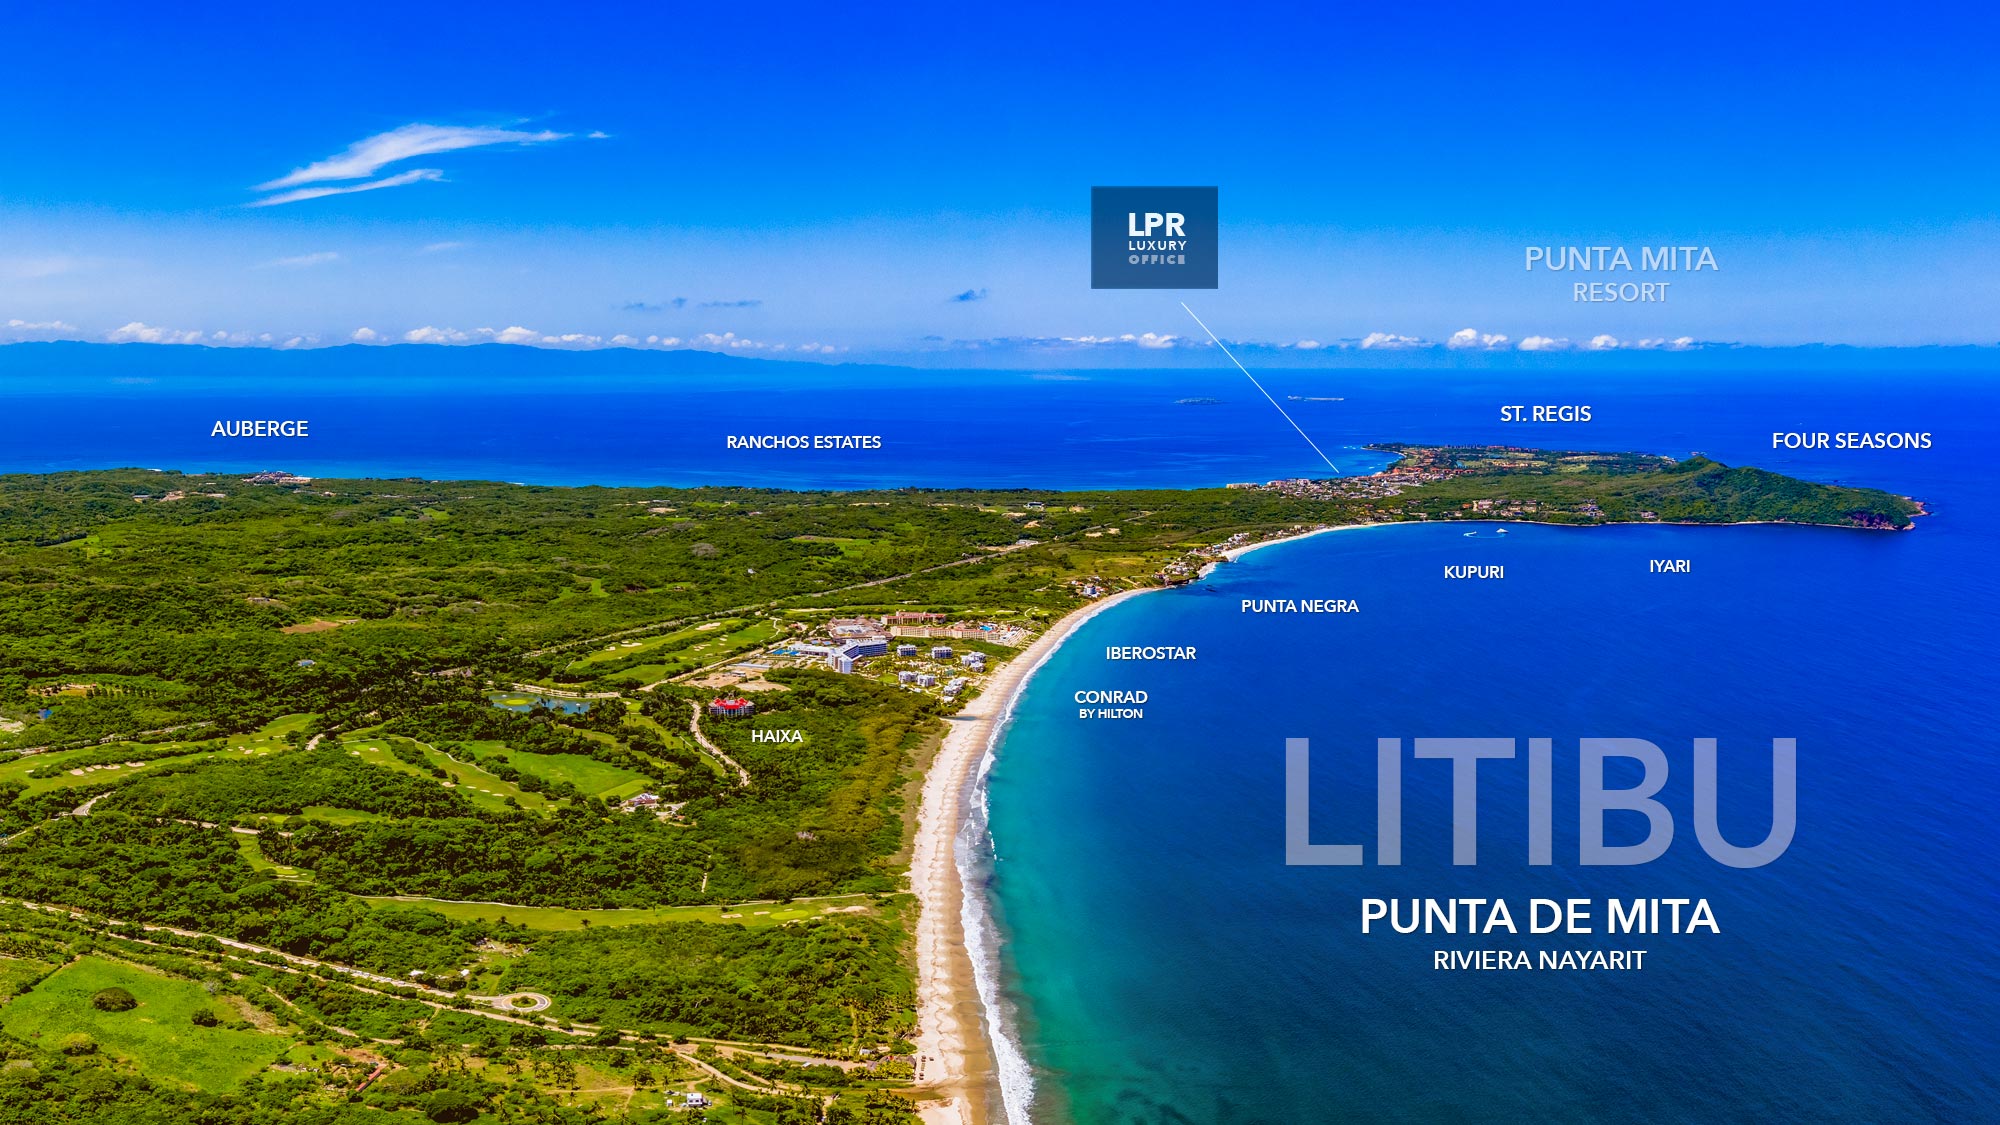 Litibu - Punta de Mita, Rivier Nayarit, Mexico - Luxury Real estate - condos for sale